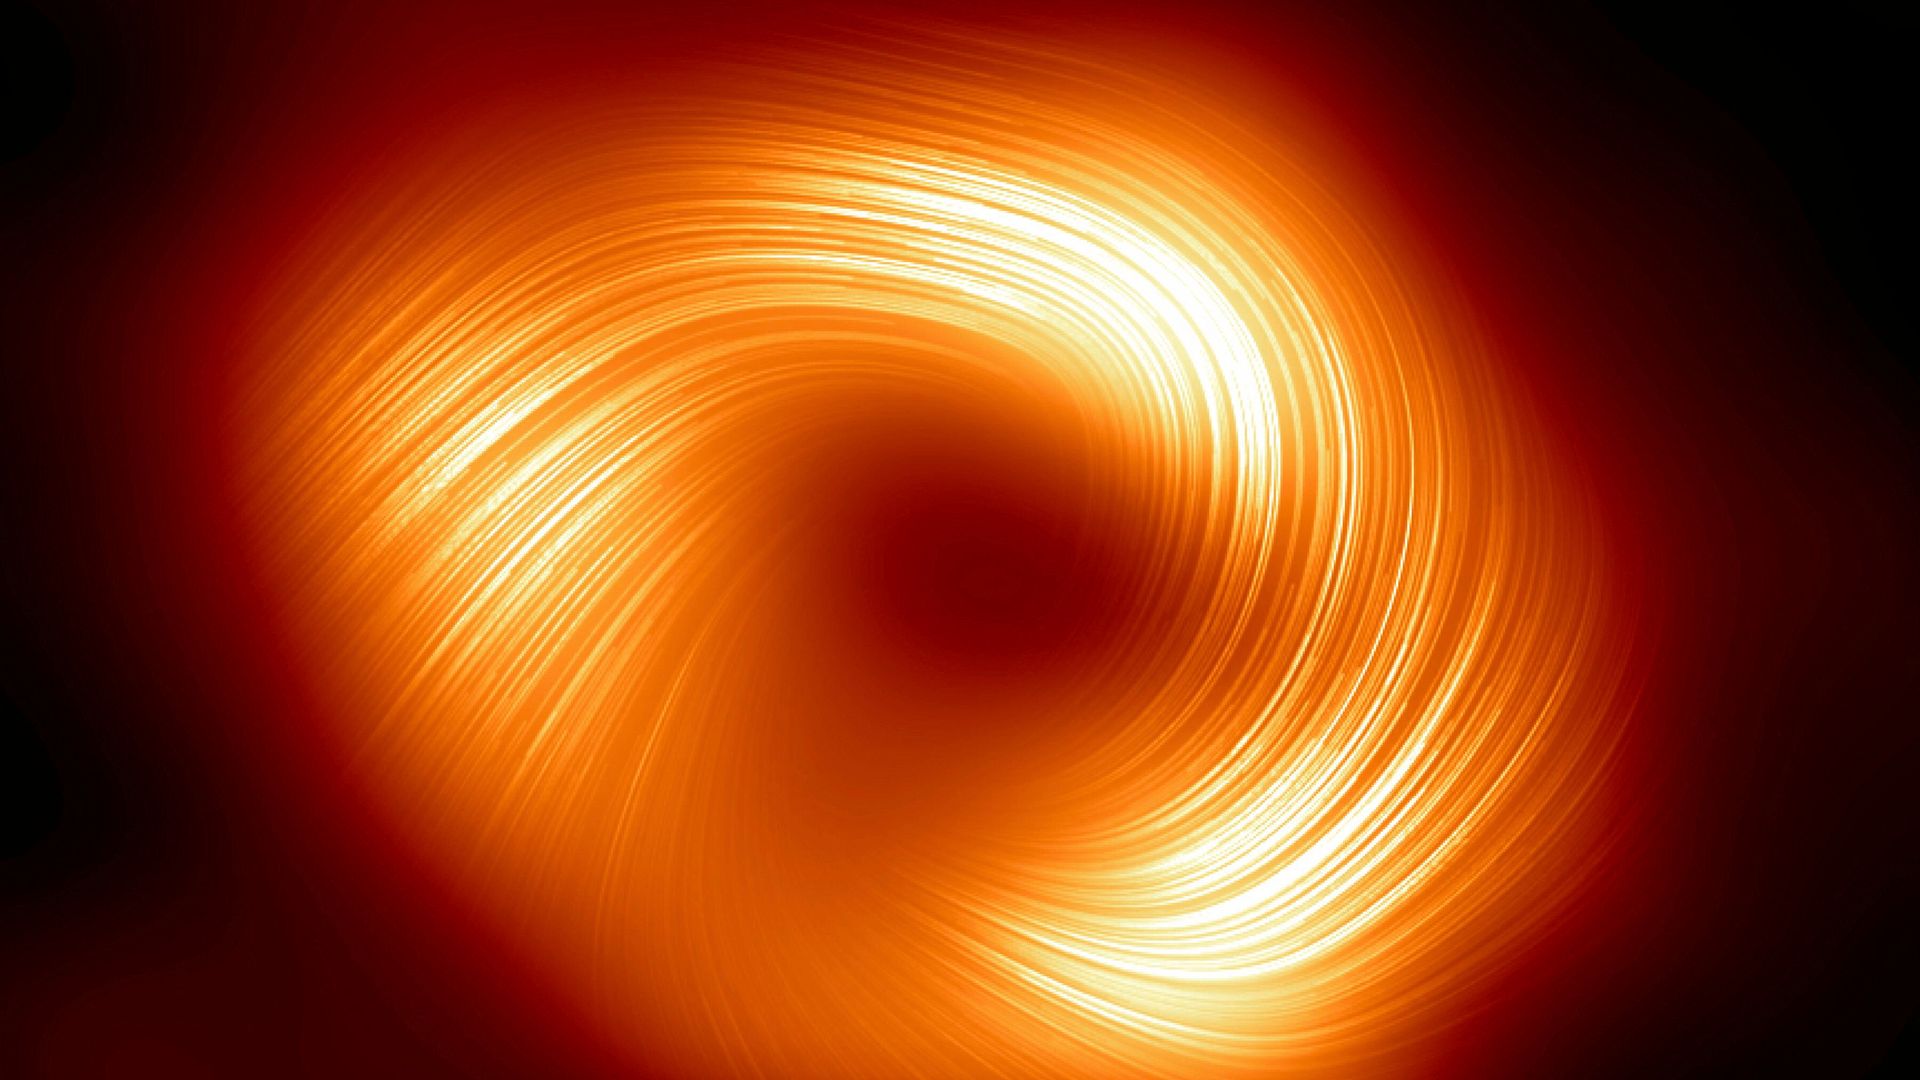 schwarzes loch sagittarius a*: magnetfeld um das schwarze loch in unserer milchstraße erstmals fotografiert